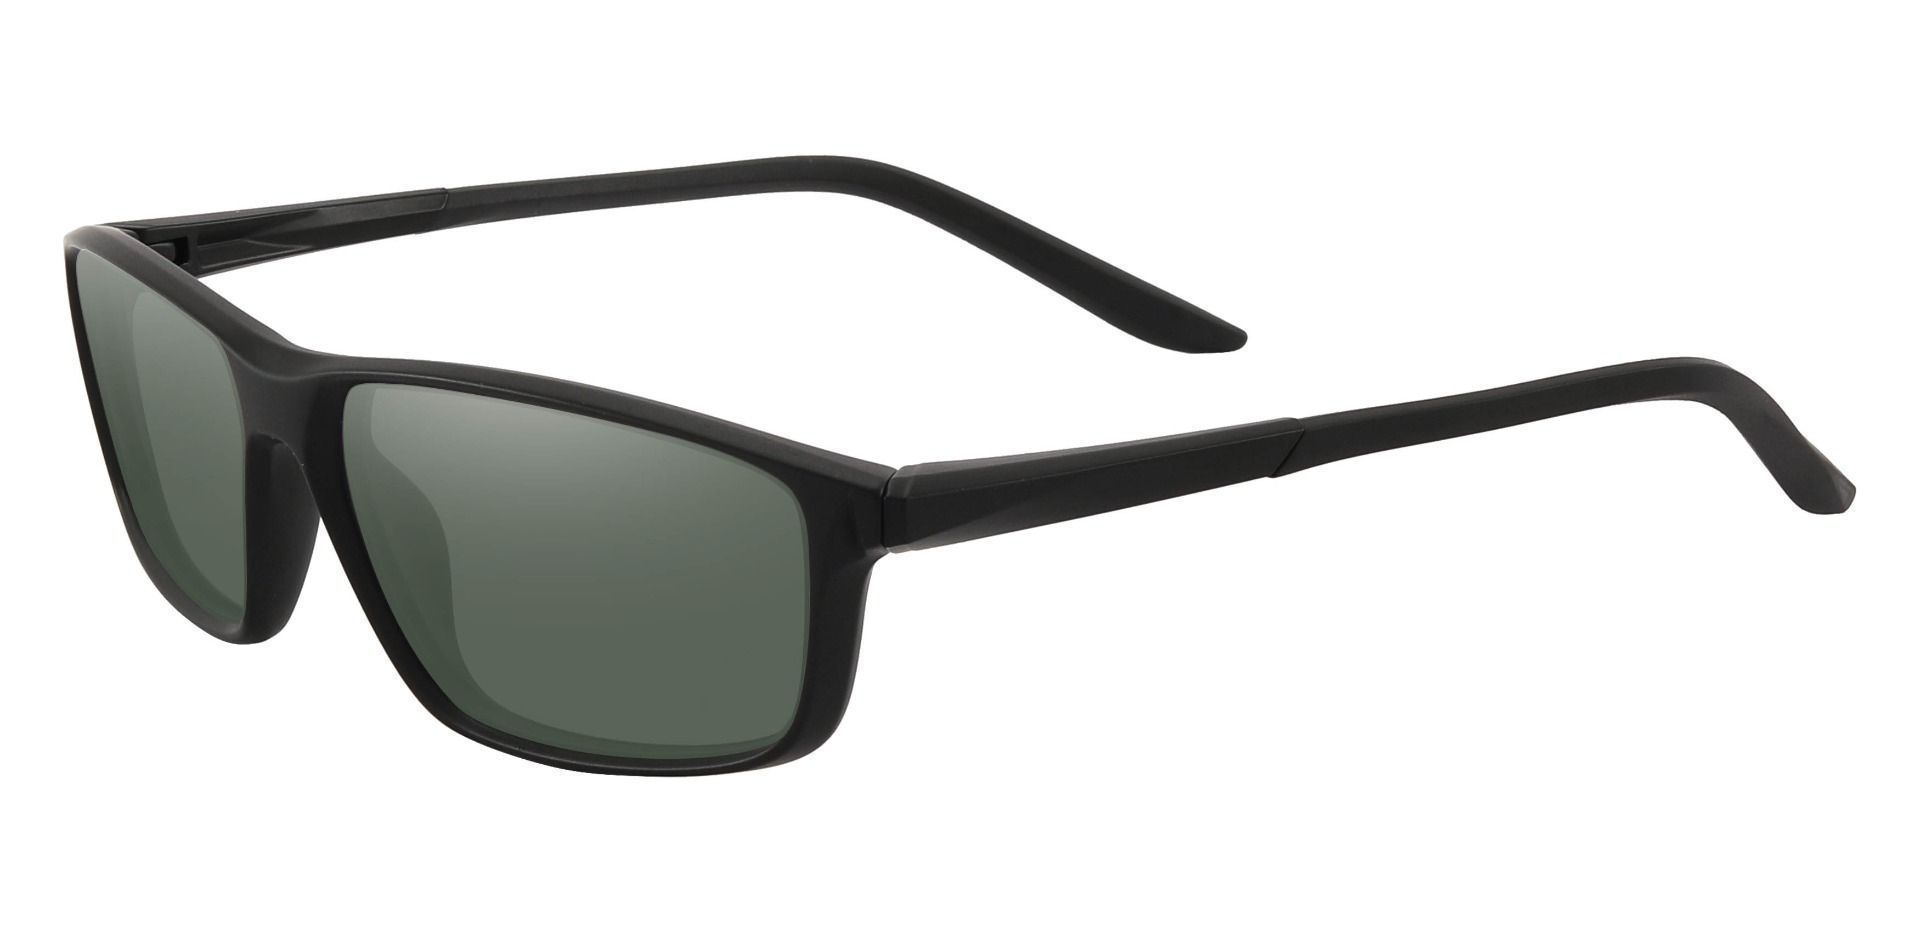 Mark Rectangle Prescription Sunglasses - Black Frame With Green Lenses